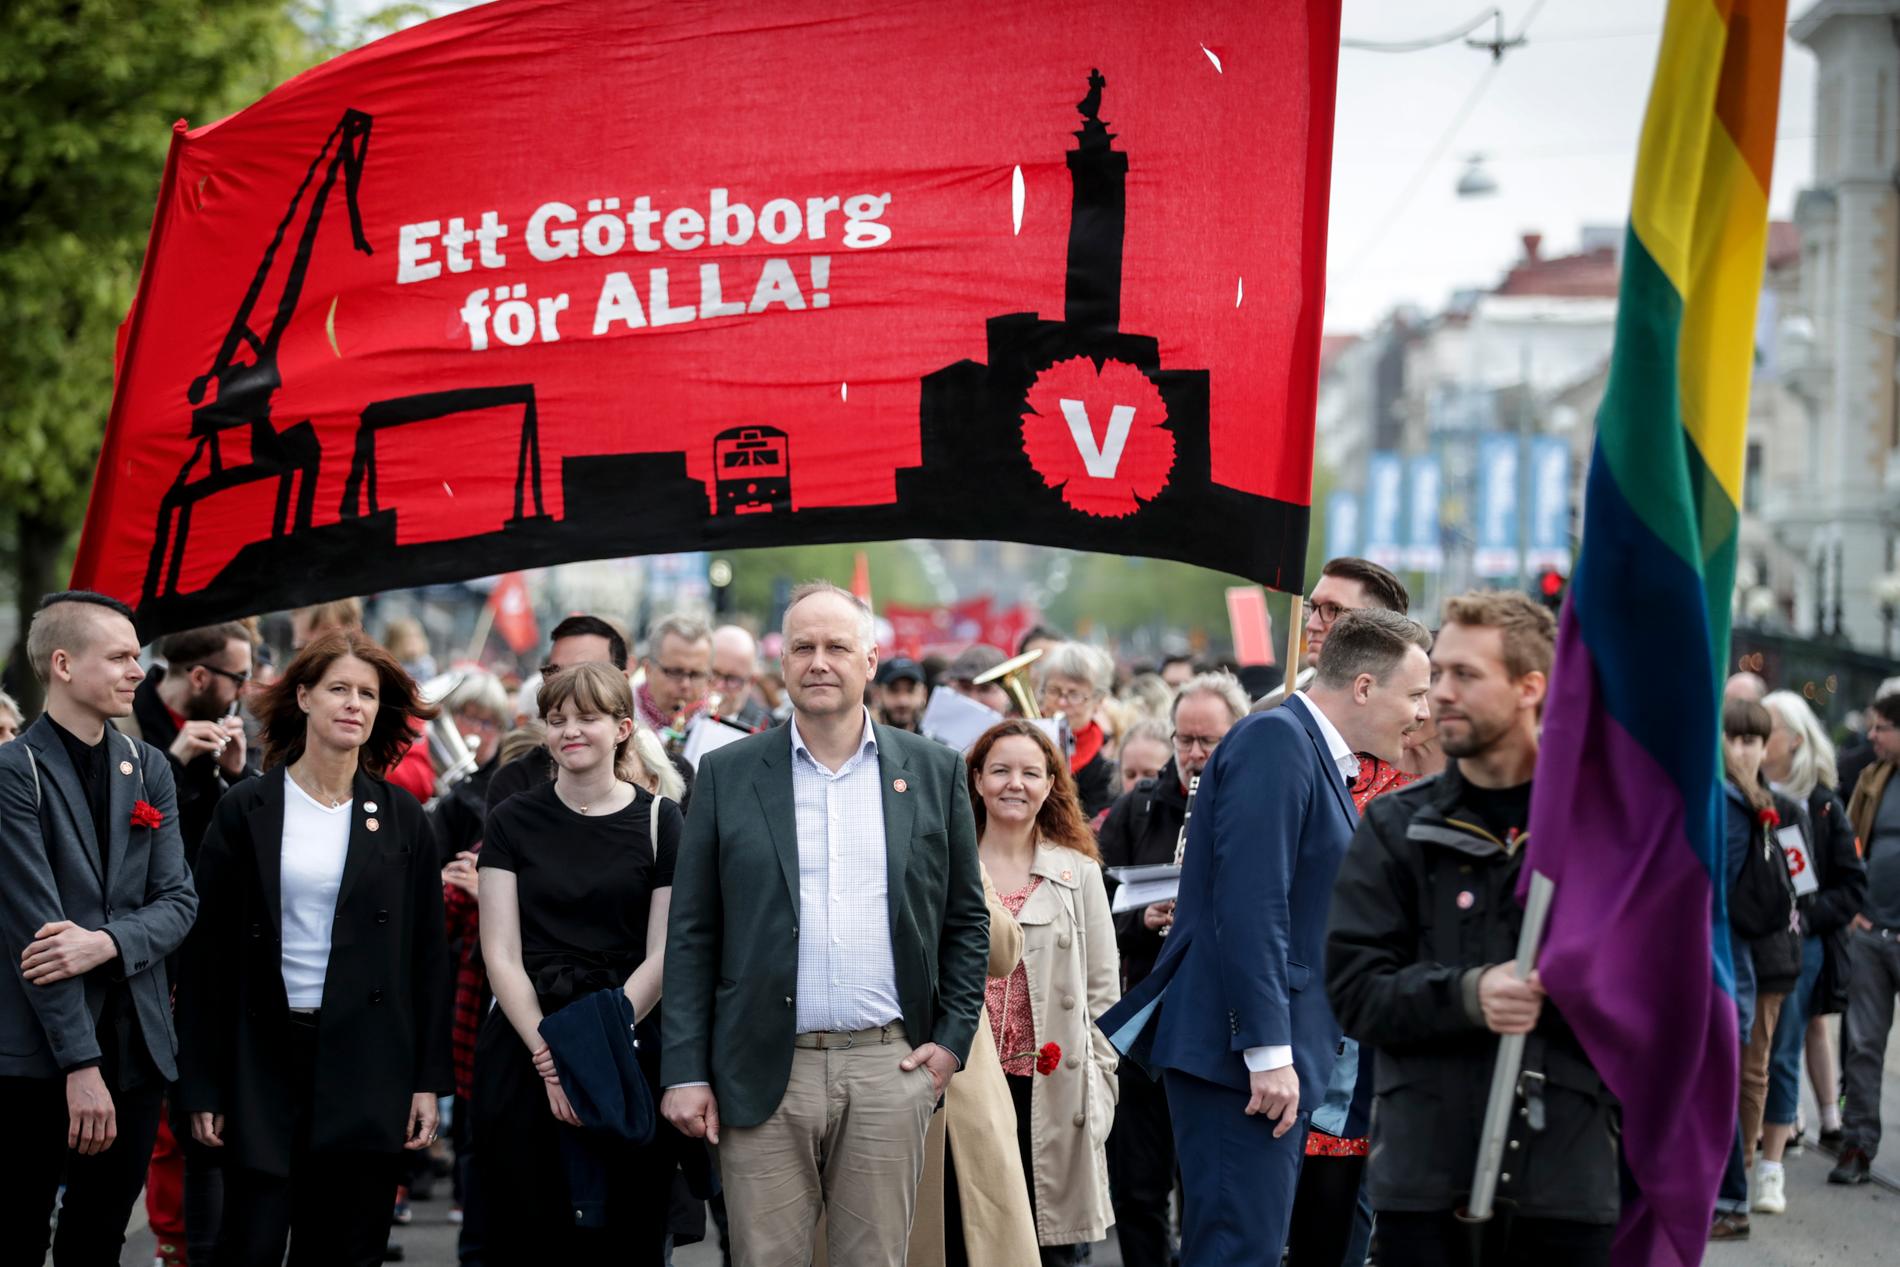 Vänsterledaren Jonas Sjöstedt i spetsen för partiets förstamajtåg i Göteborg. Sjöstedt hotade med att inte backa för ett nyval, om regeringen lägger förslag till riksdagen om marknadshyror och sämre anställningstrygghet.